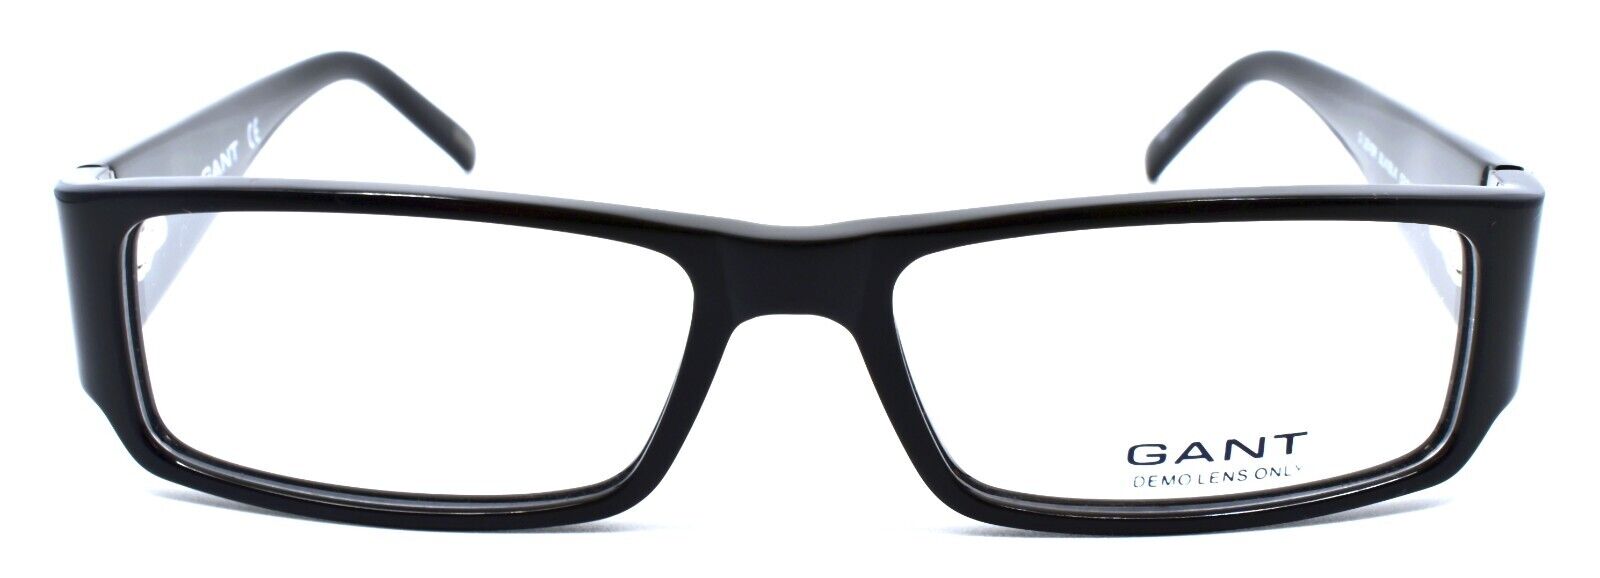 2-GANT G Lever BLK/BLK Eyeglasses Frames 52-15-135 Black-715583111301-IKSpecs